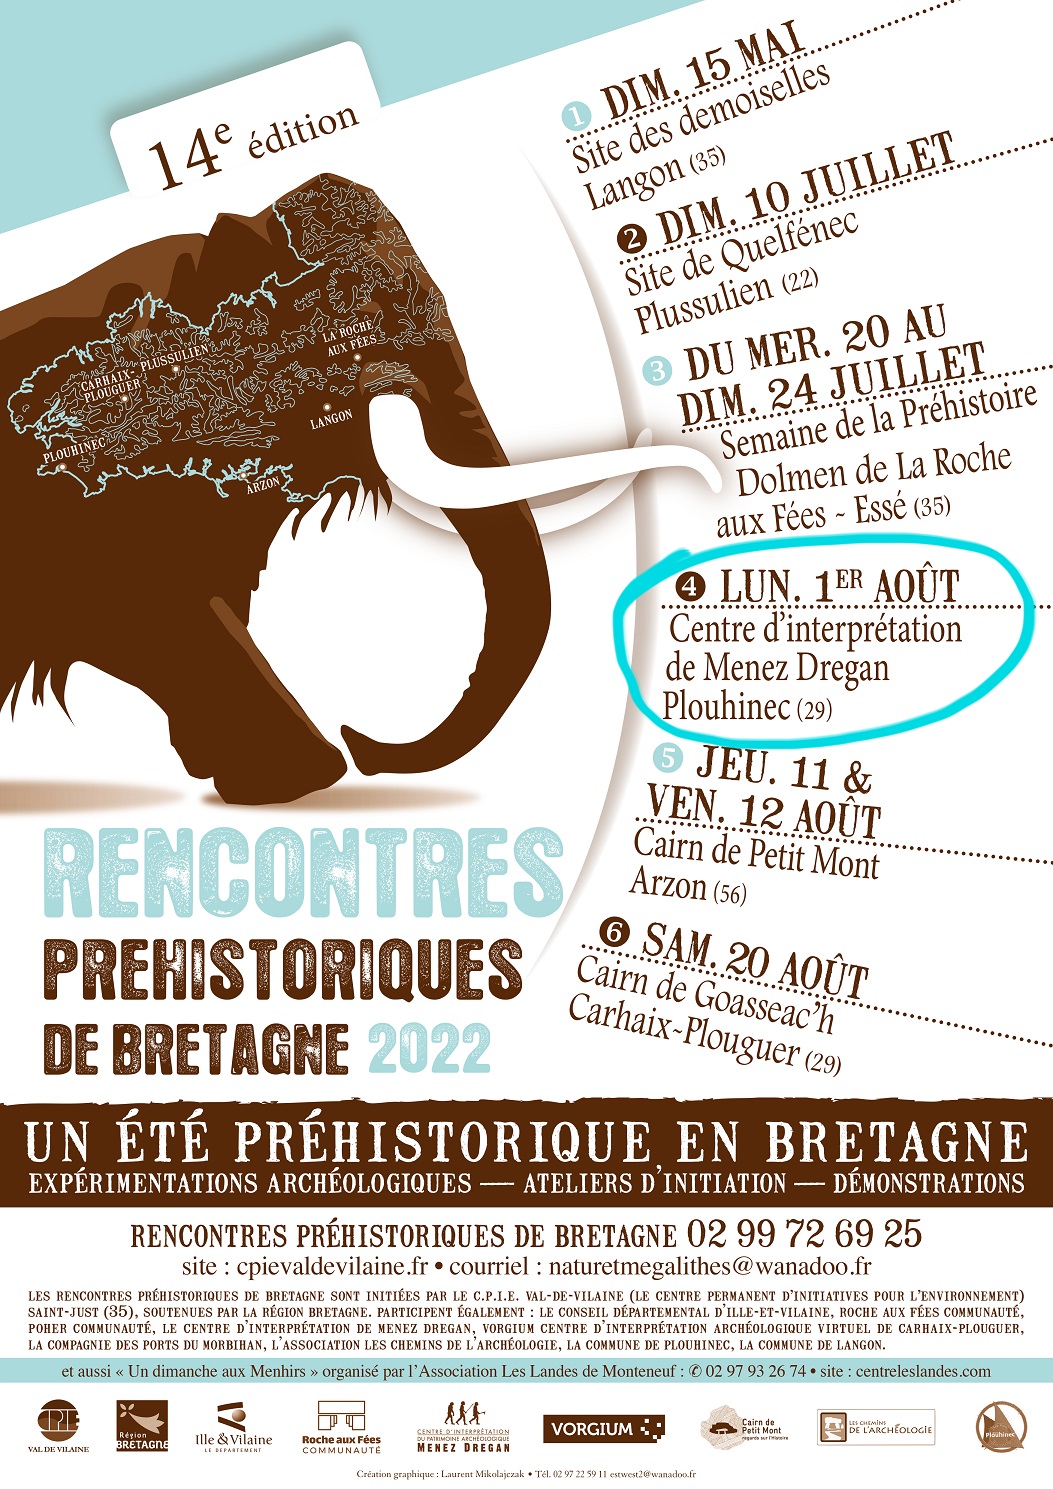 Rencontres Préhistoriques de Bretagne - Plouhinec (29)